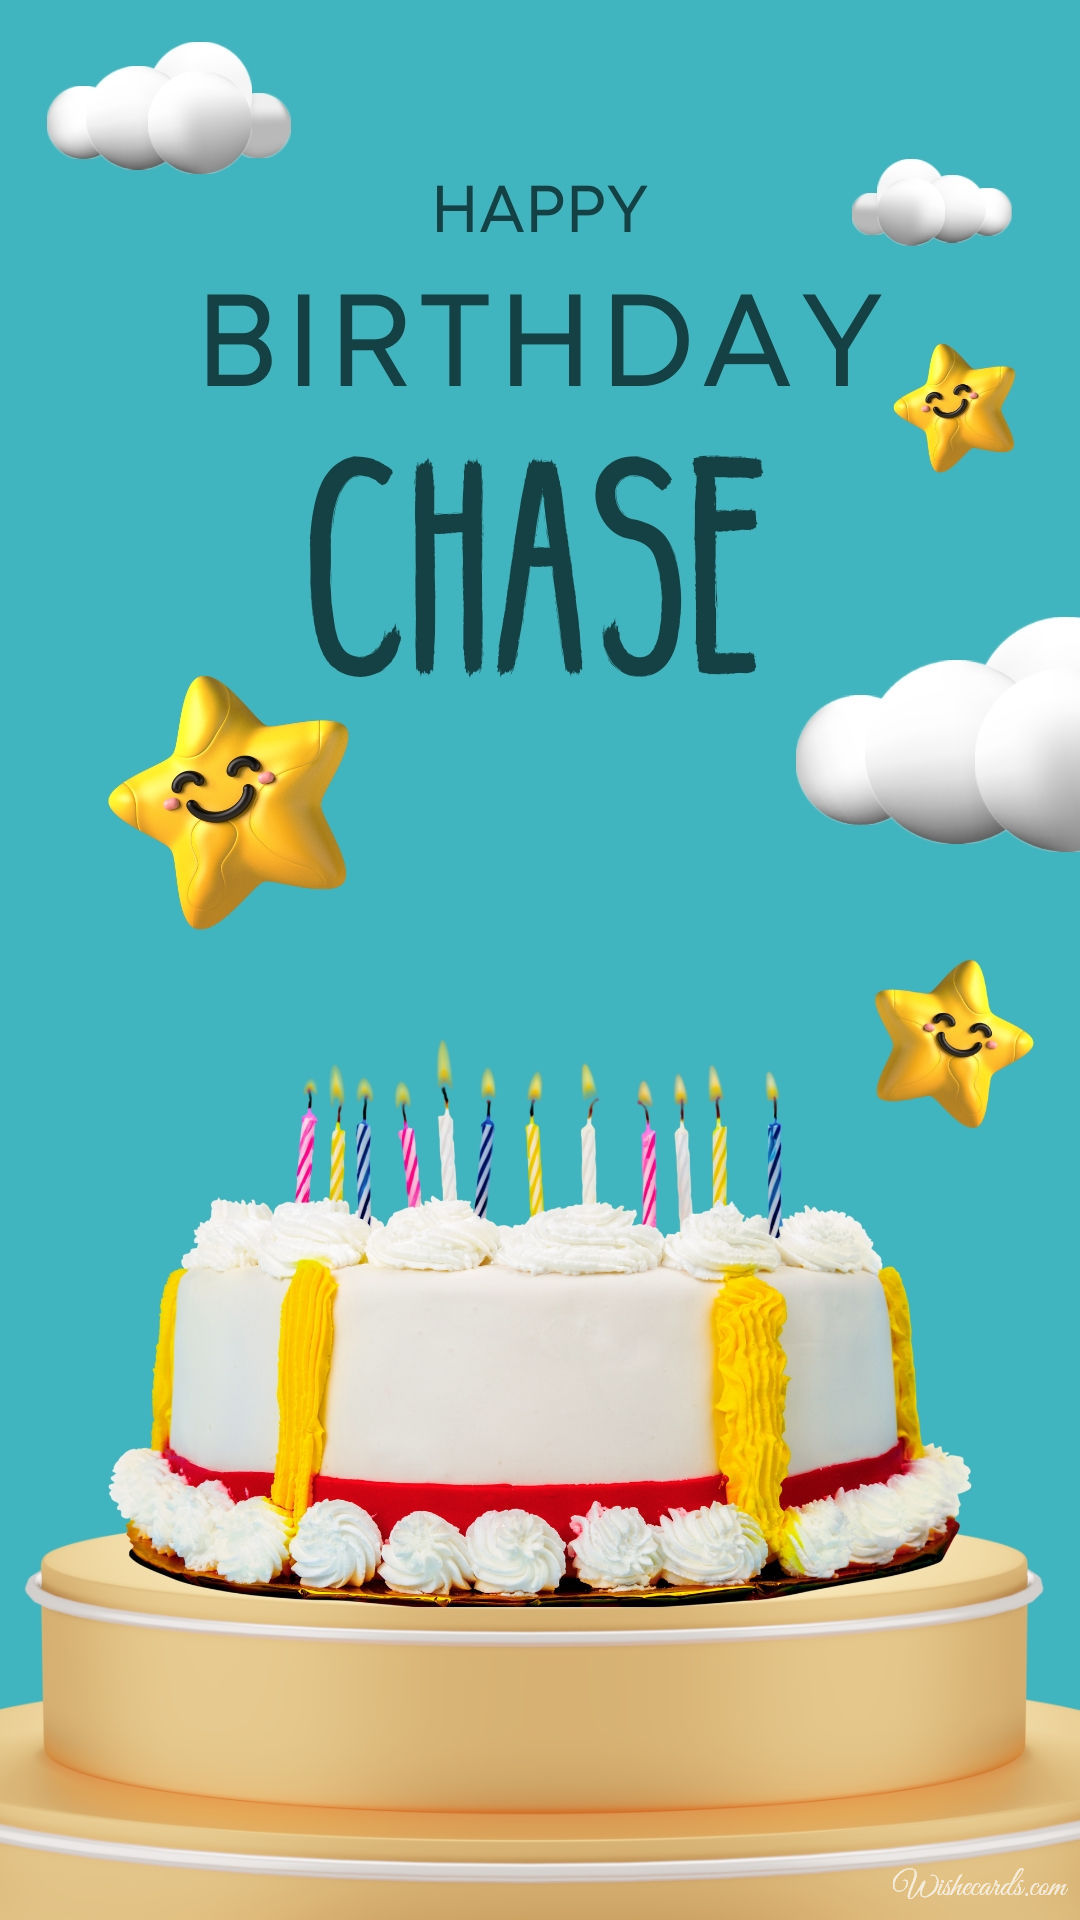 Happy Birthday Chase